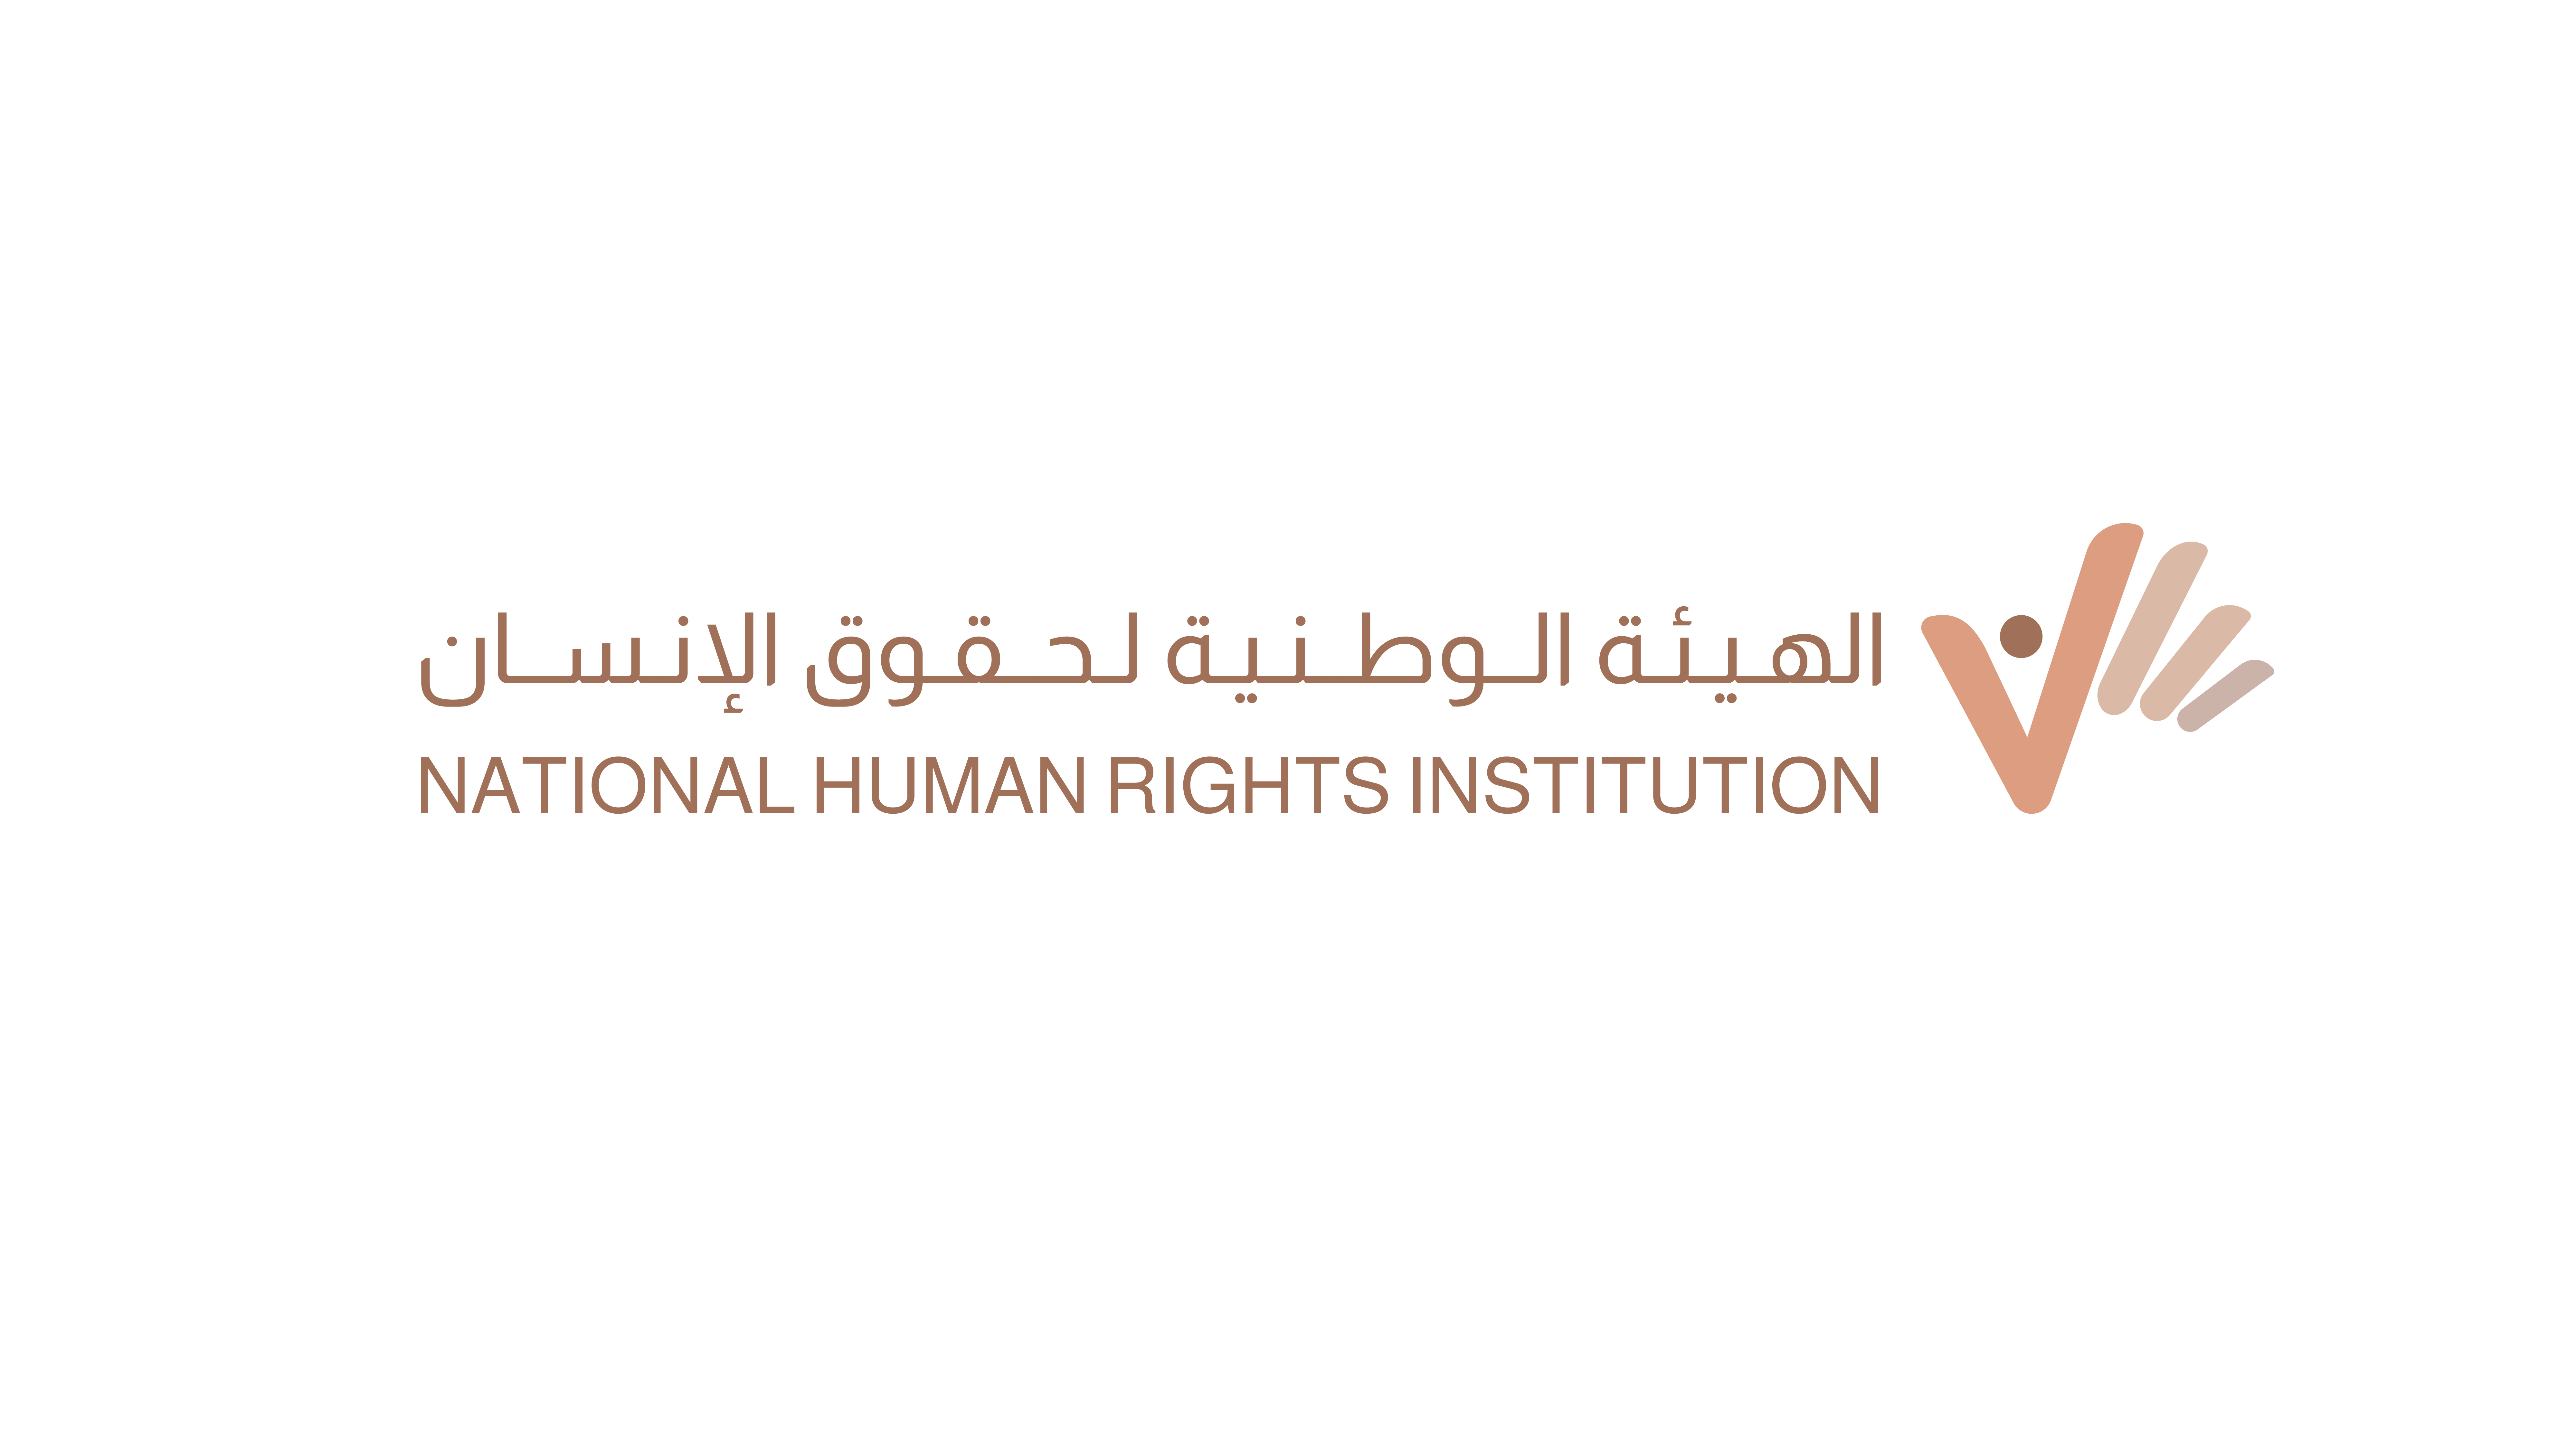 مجلس أمناء الهيئة الوطنية لحقوق الإنسان يعقد اجتماعه  الخامس بمشاركة ممثلي الجهات الحكومية